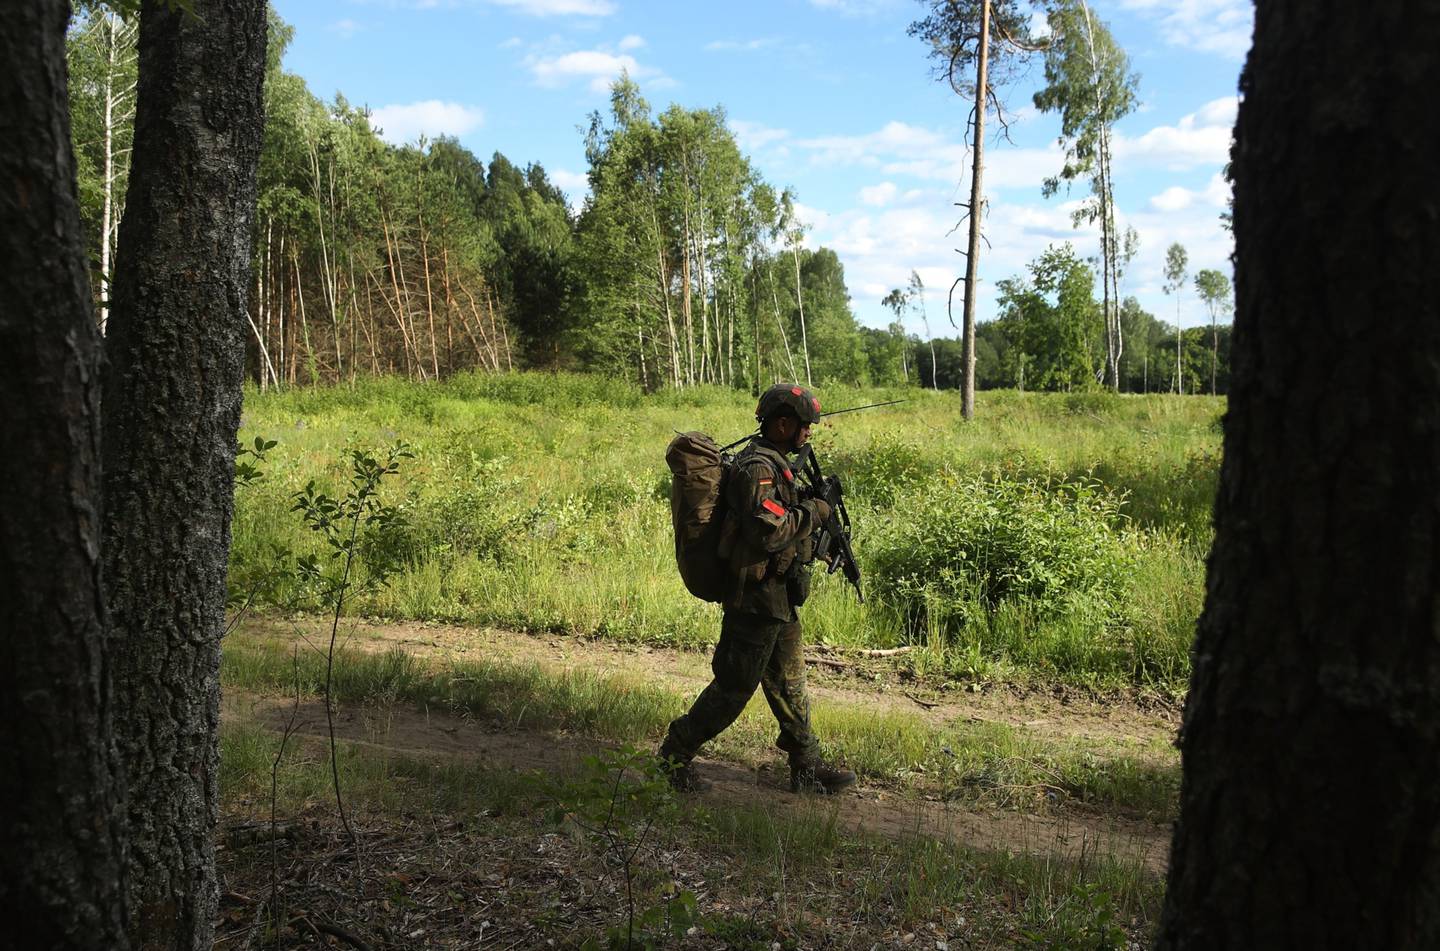 Un soldado de infantería del Bundeswehr, las fuerzas armadas alemanas, regresa de una misión de reconocimiento durante los ejercicios militares multinacionales de la OTAN Thunder Storm 2018 el 7 de junio de 2018 cerca de Pabrade, Lituania. (Foto de Sean Gallup/Getty Images)